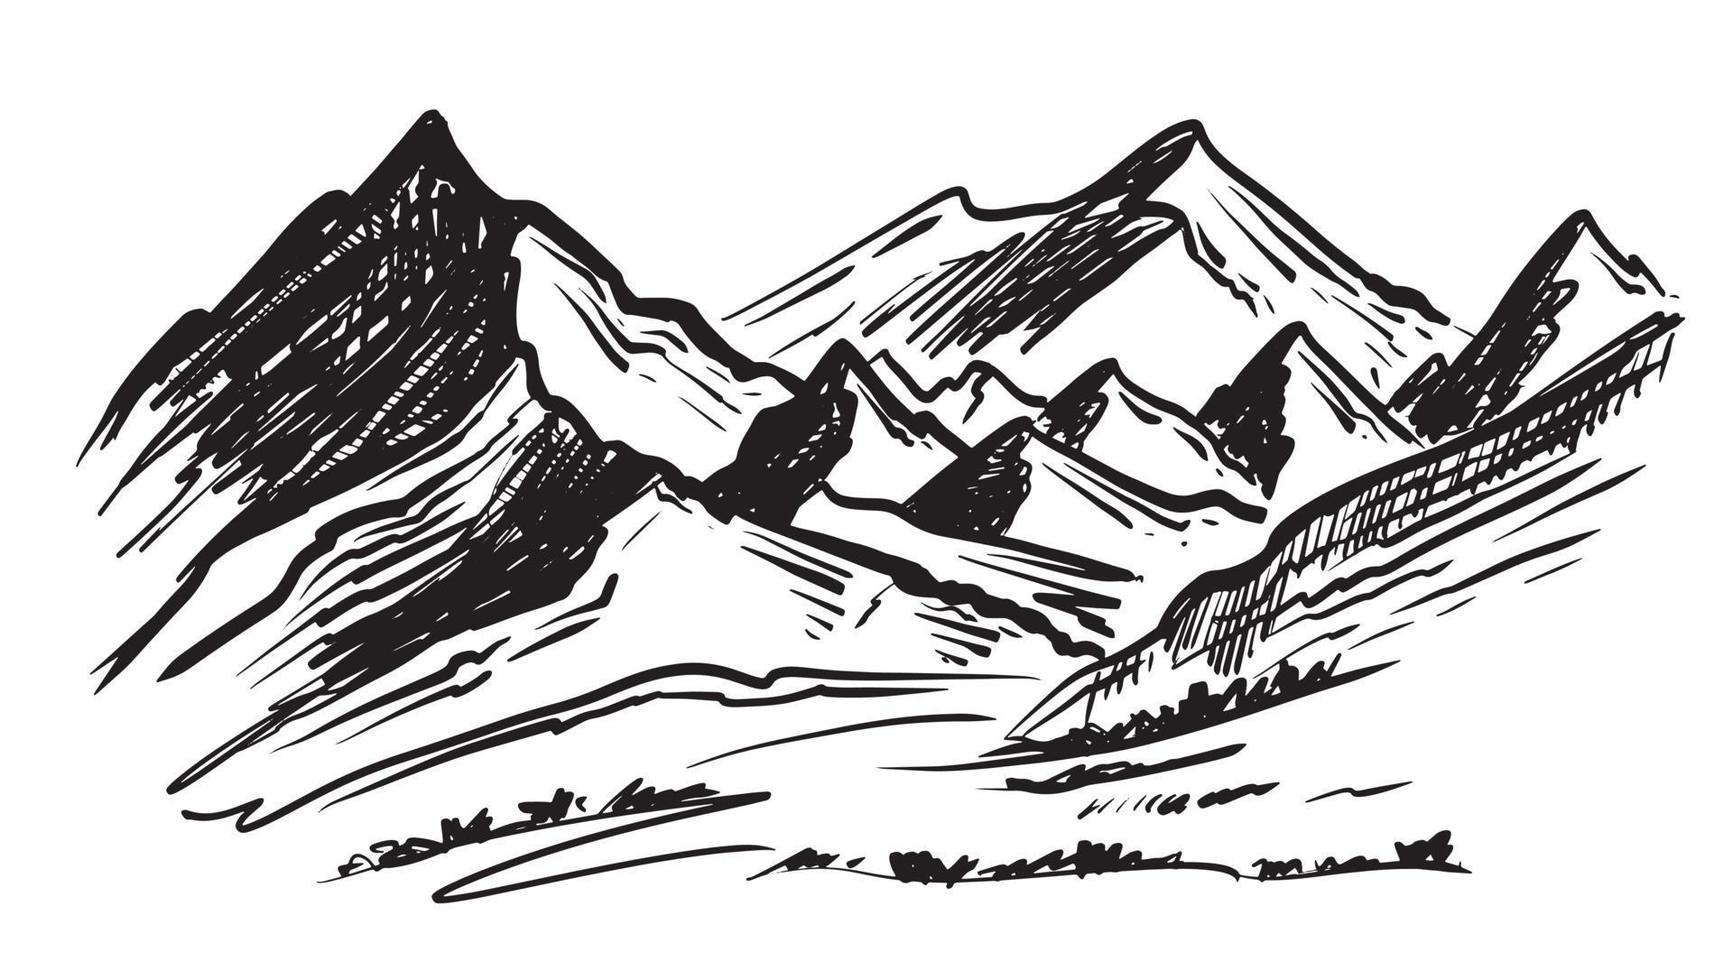 montanhas da paisagem. ilustração desenhada à mão vetor